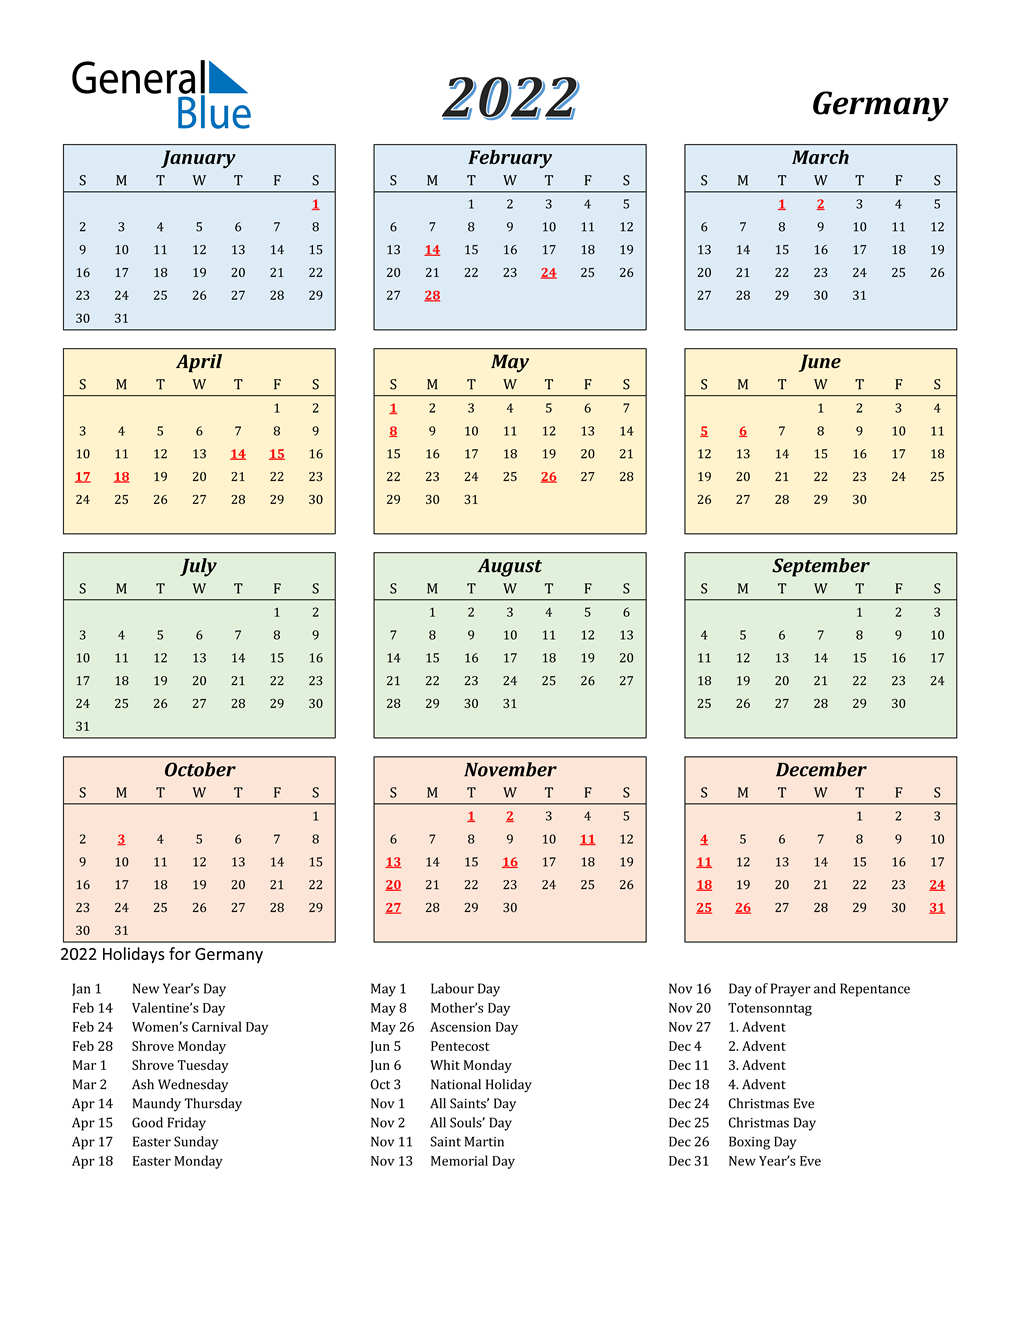 Get February 2022 Calendar Nz